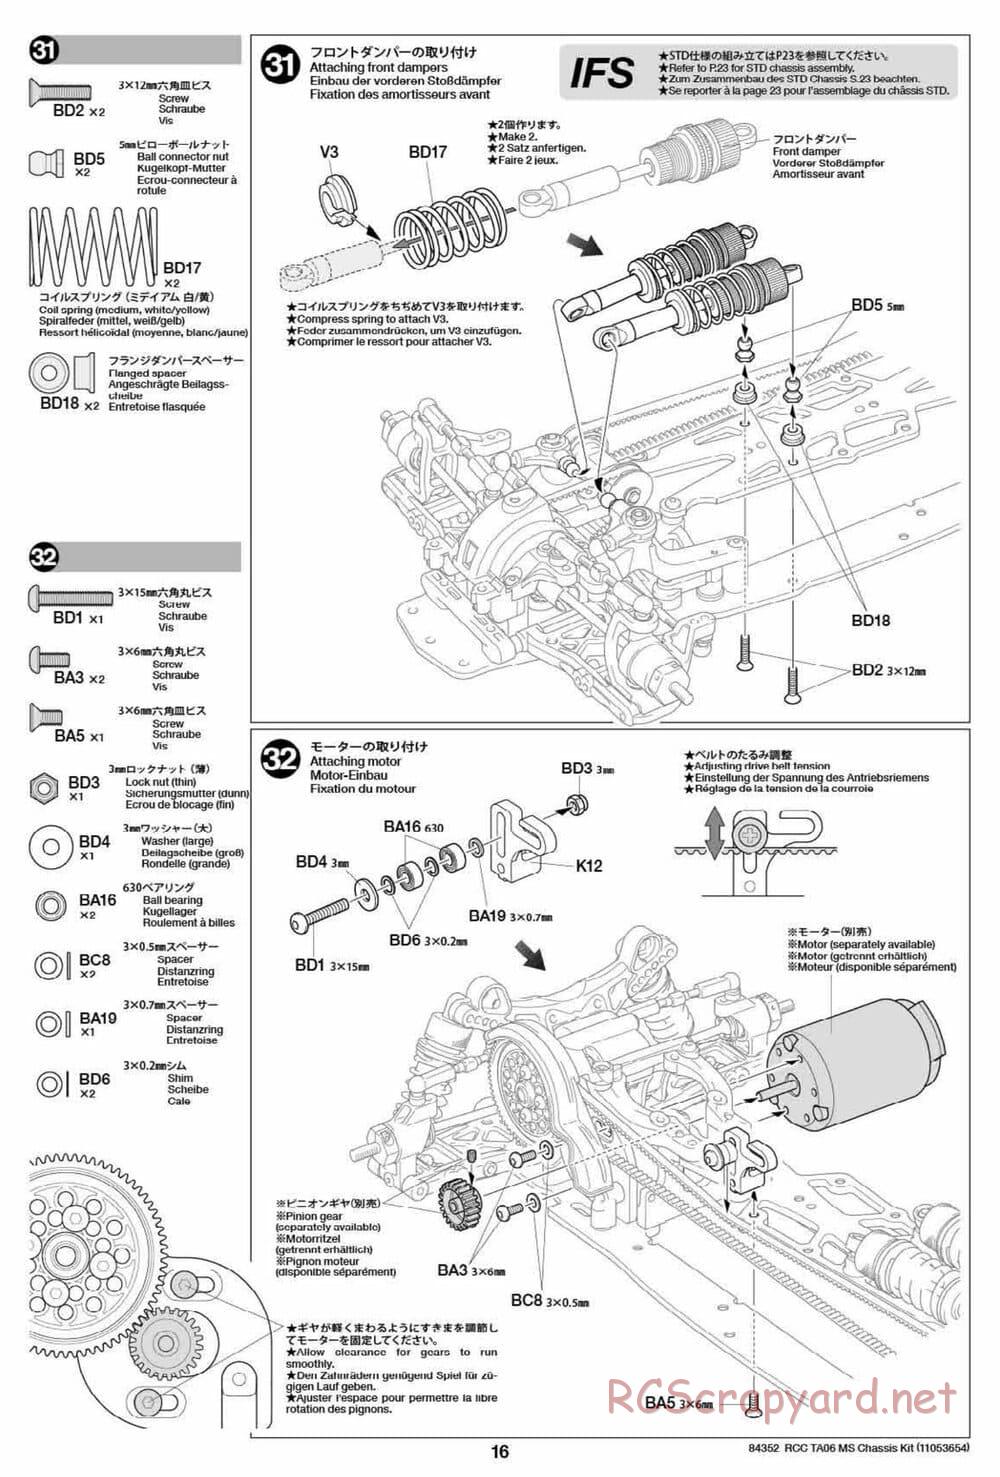 Tamiya - TA06 MS Chassis - Manual - Page 16